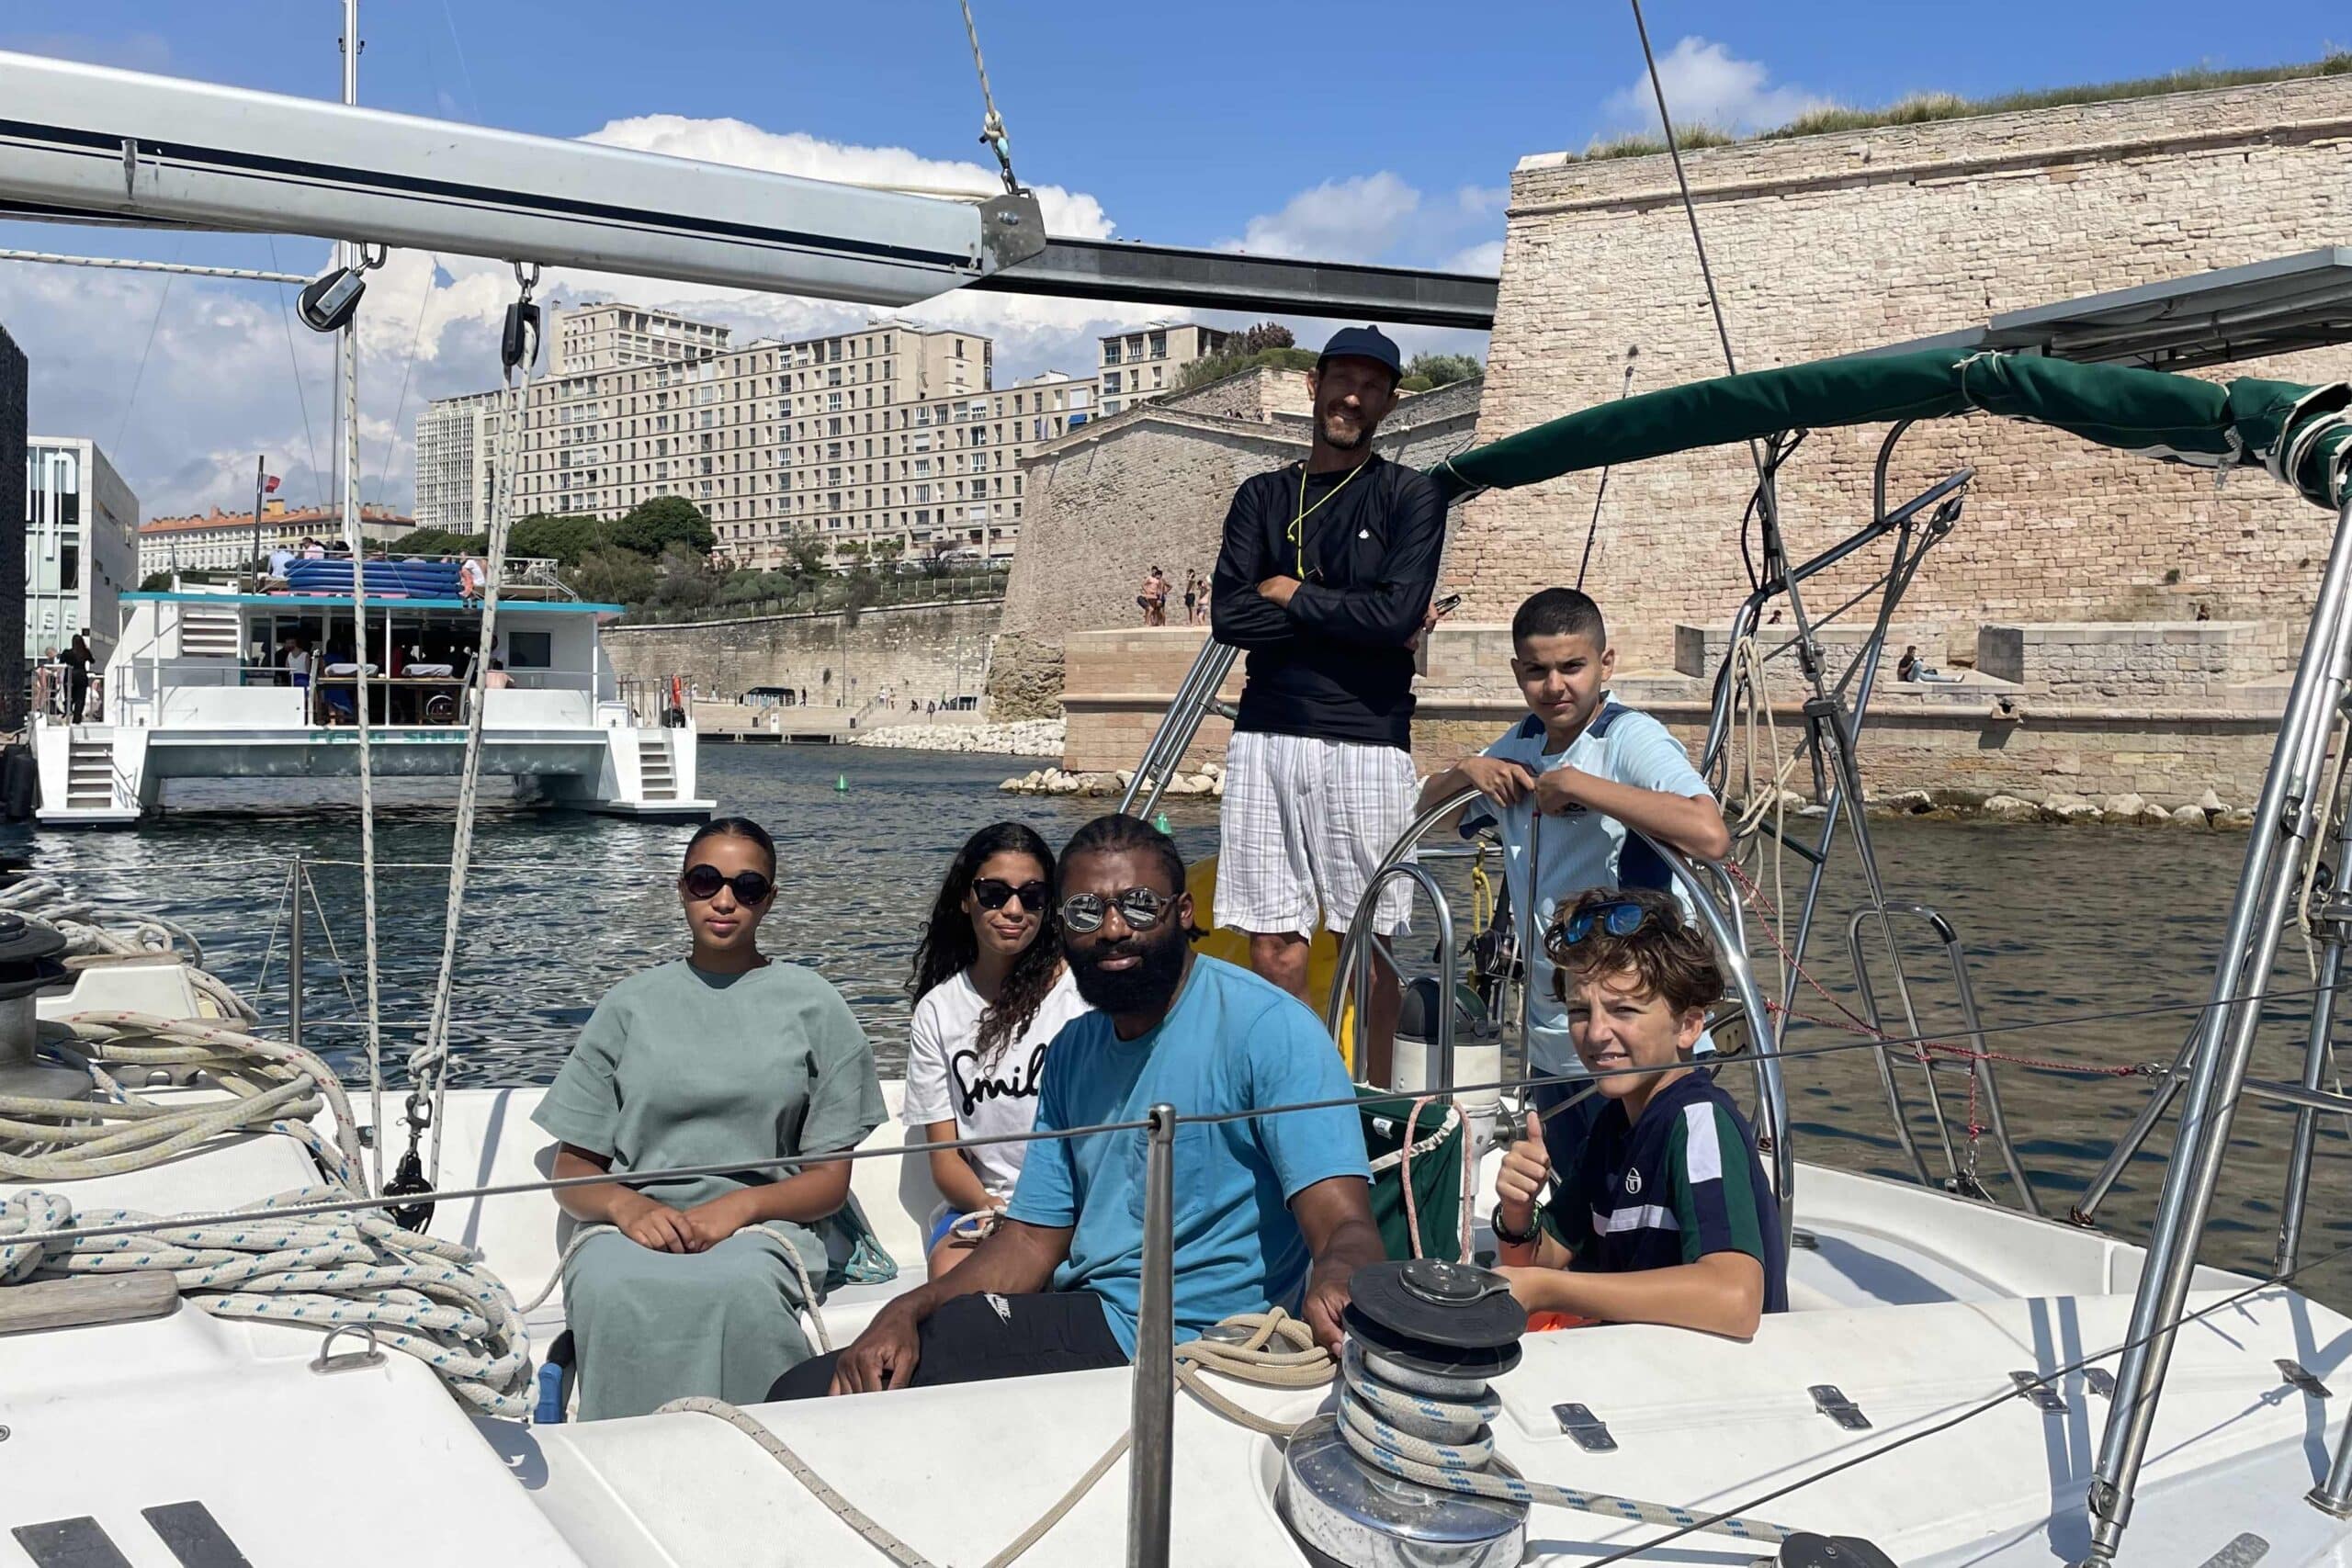 régate, Avec la Régate des Minots, les jeunes des quartiers populaires prennent la mer, Made in Marseille